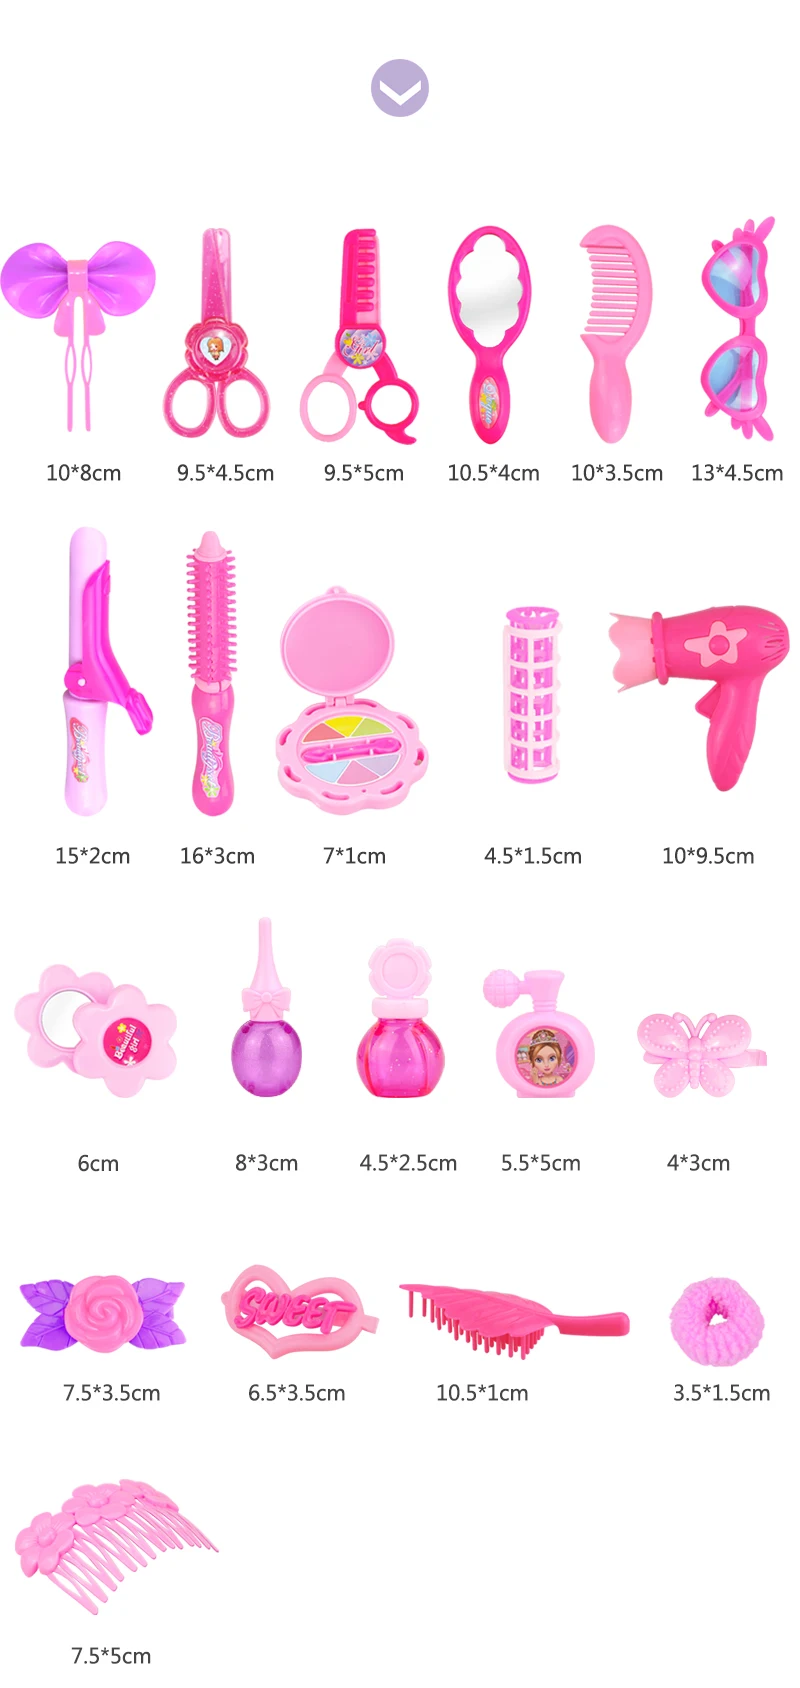 24-32 шт. ролевые игры, детские игрушки для макияжа, розовый набор для макияжа, принцесса, парикмахерское моделирование, пластиковая игрушка для девочек, туалетный косметический набор